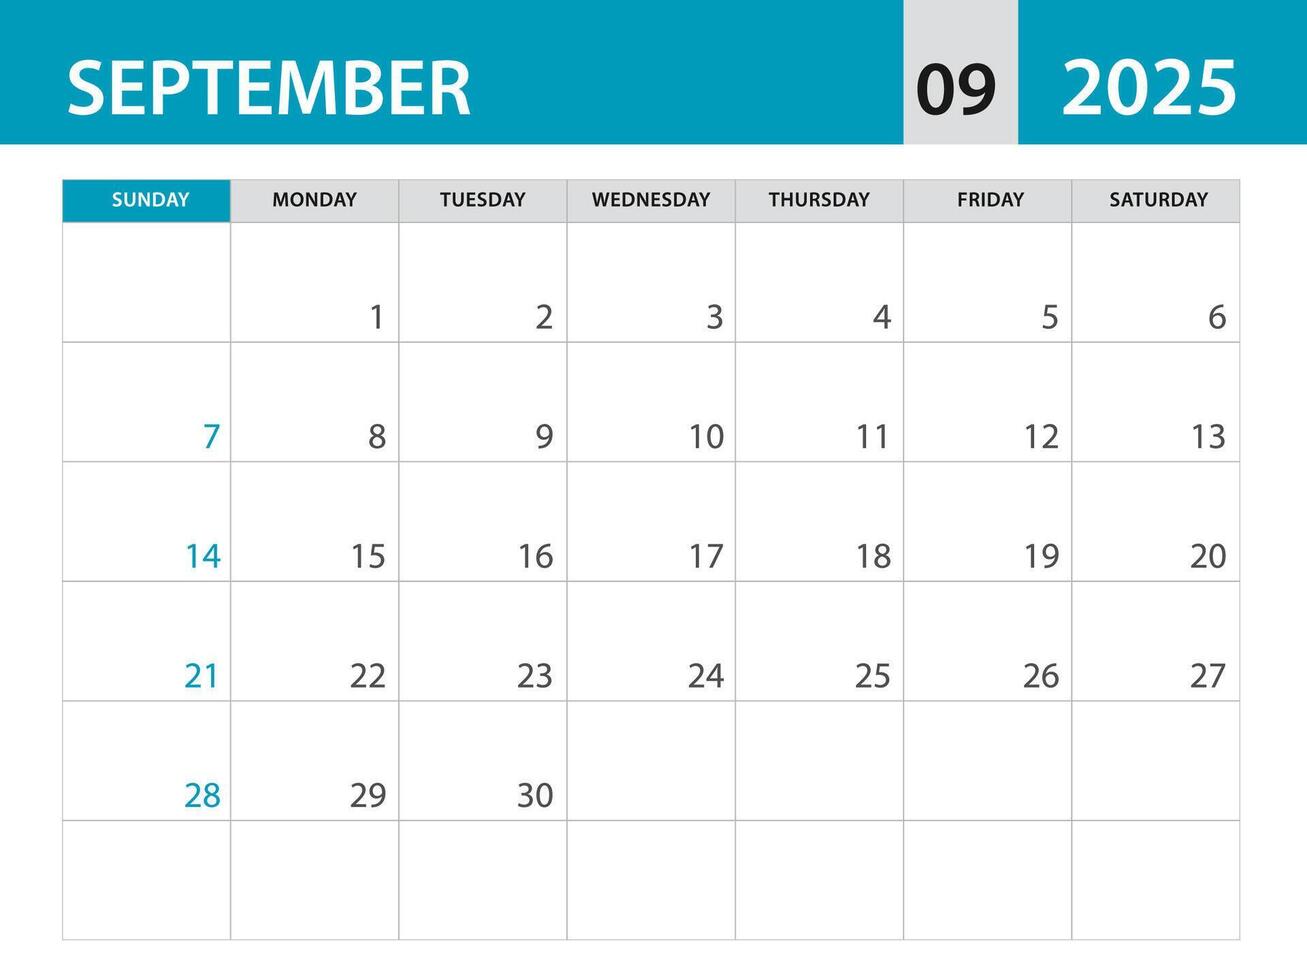 September 2025 Vorlage - - Kalender 2025 Vorlage , Planer monatlich Design, Schreibtisch Kalender 2025, Mauer Kalender Design, minimal Stil, Werbung, Poster, Drucken Medien, Blau horizontal Layout vektor